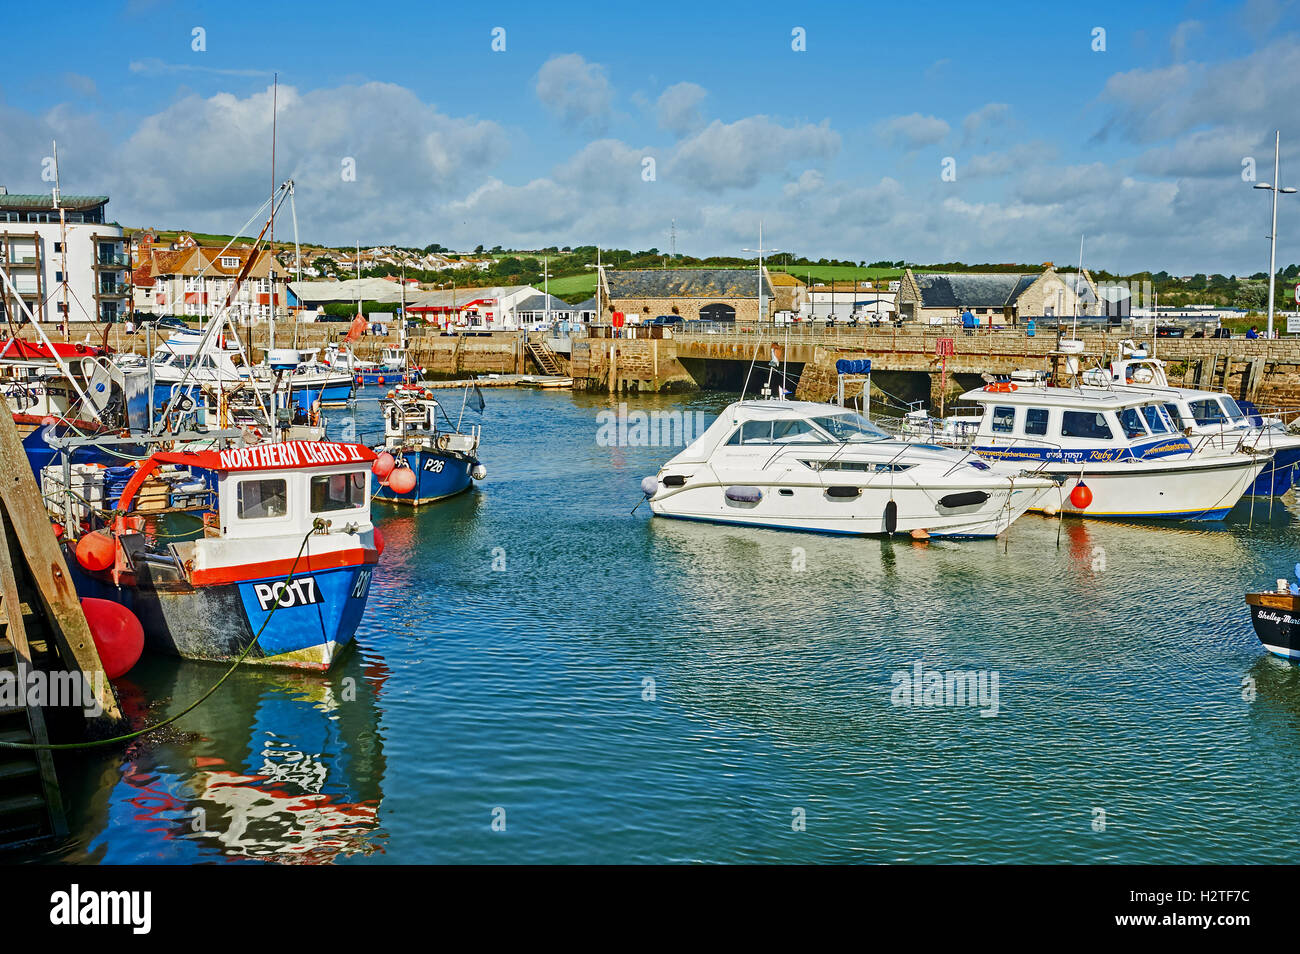 West Bay nel Dorset è un piccolo porto di lavoro visto qui con un mix di lavoro barche da pesca. Il piccolo porto è stato centrale per la serie Broadchurch. Foto Stock